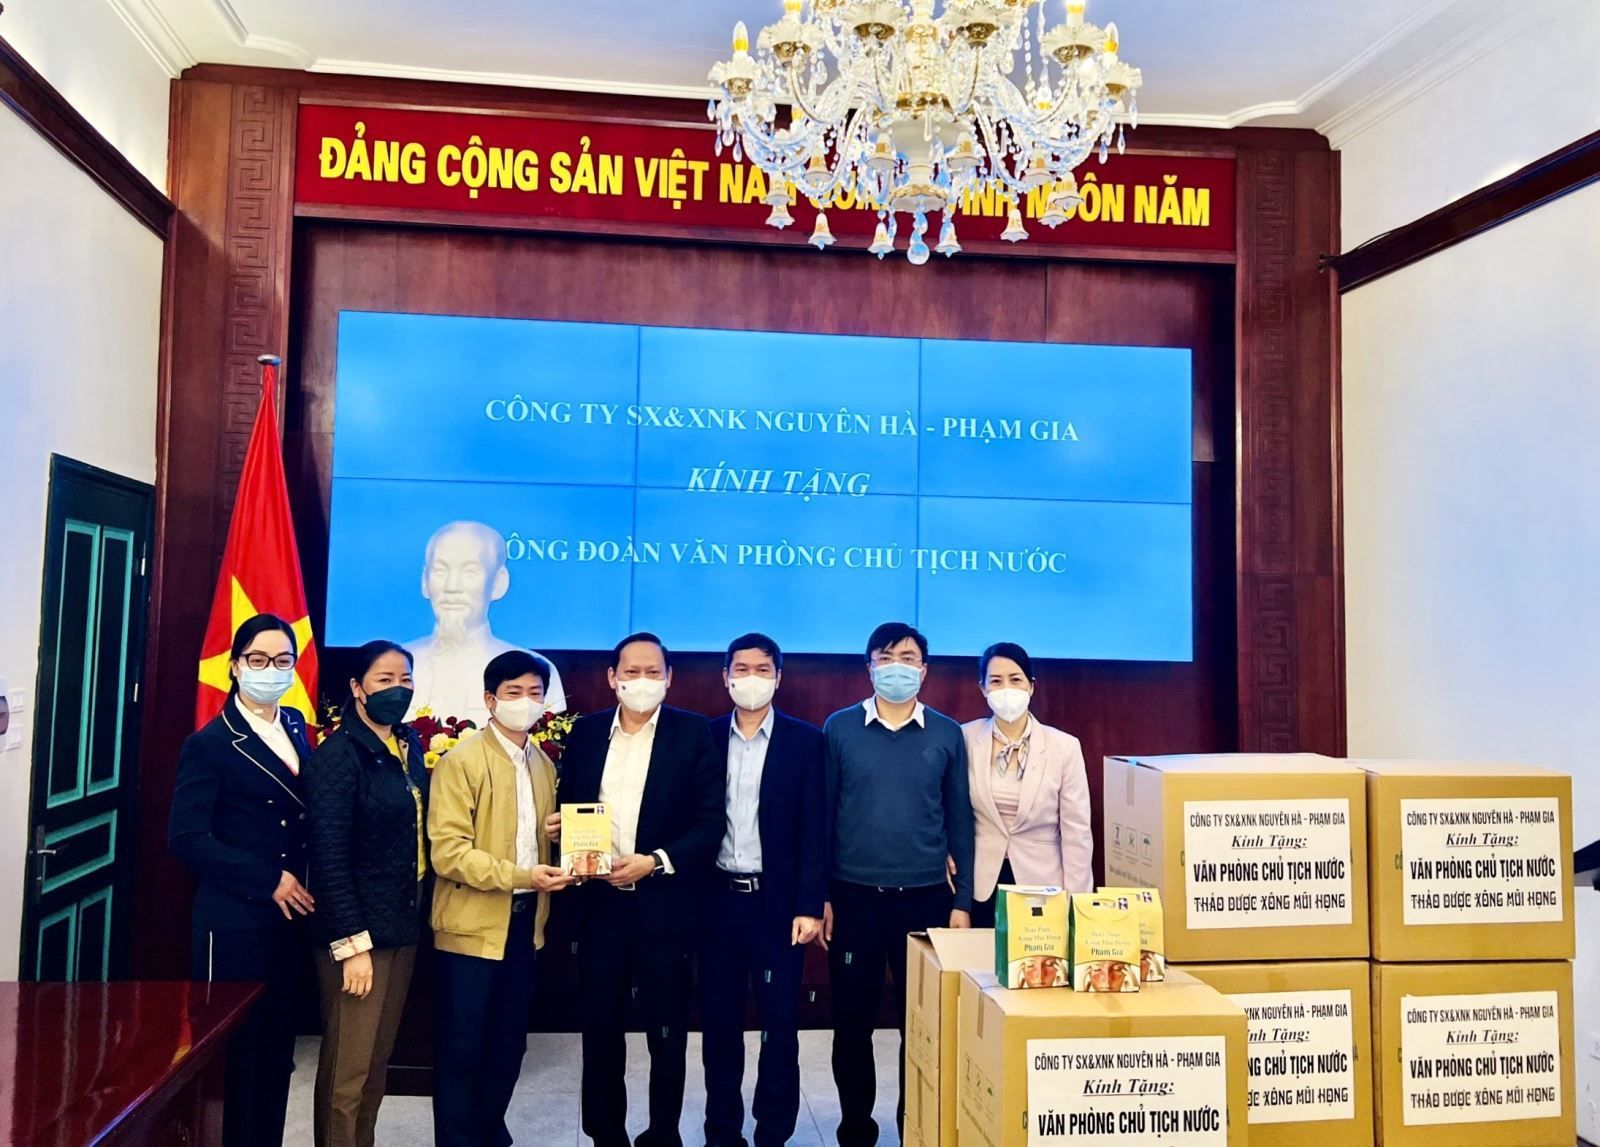 Phó Chủ tịch Thường trực Công đoàn Văn phòng Quốc hội Bùi Lê Minh tặng quà lưu niệm cho công ty Nguyên Hà-Phạm Gia